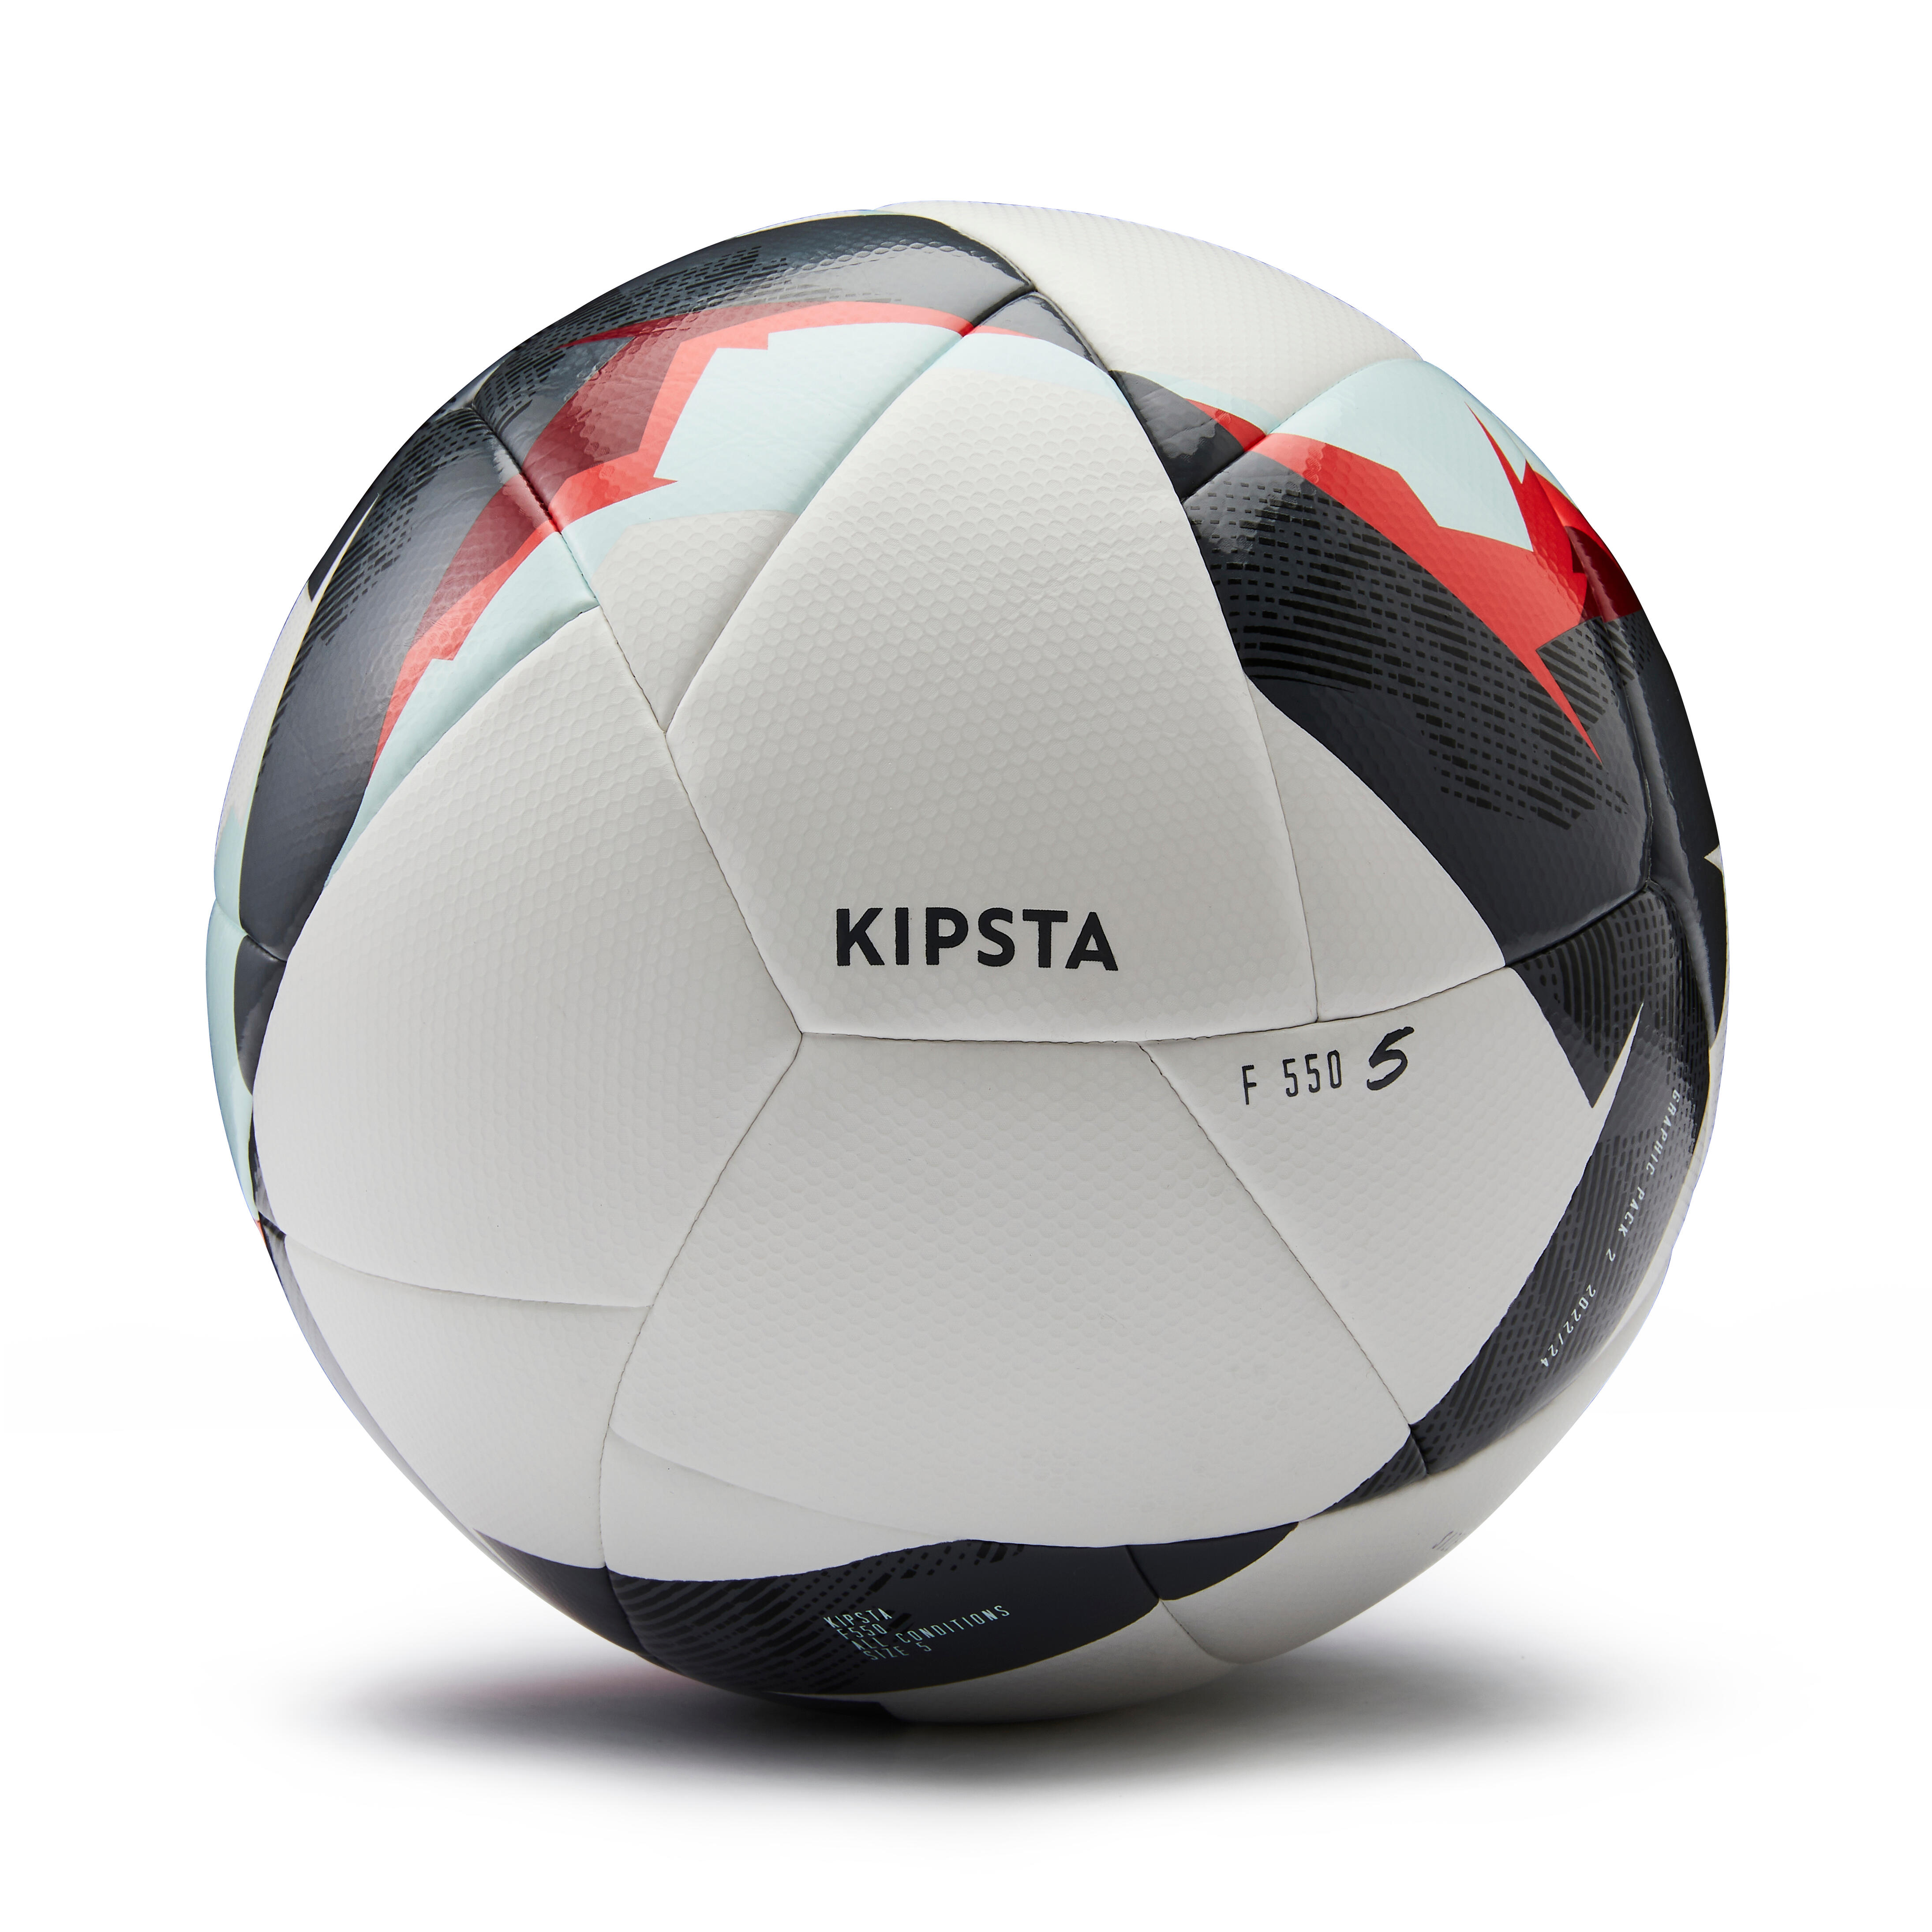 Size 5 Hybrid Soccer Ball - F 550 White - Snow white, Red - Kipsta ...